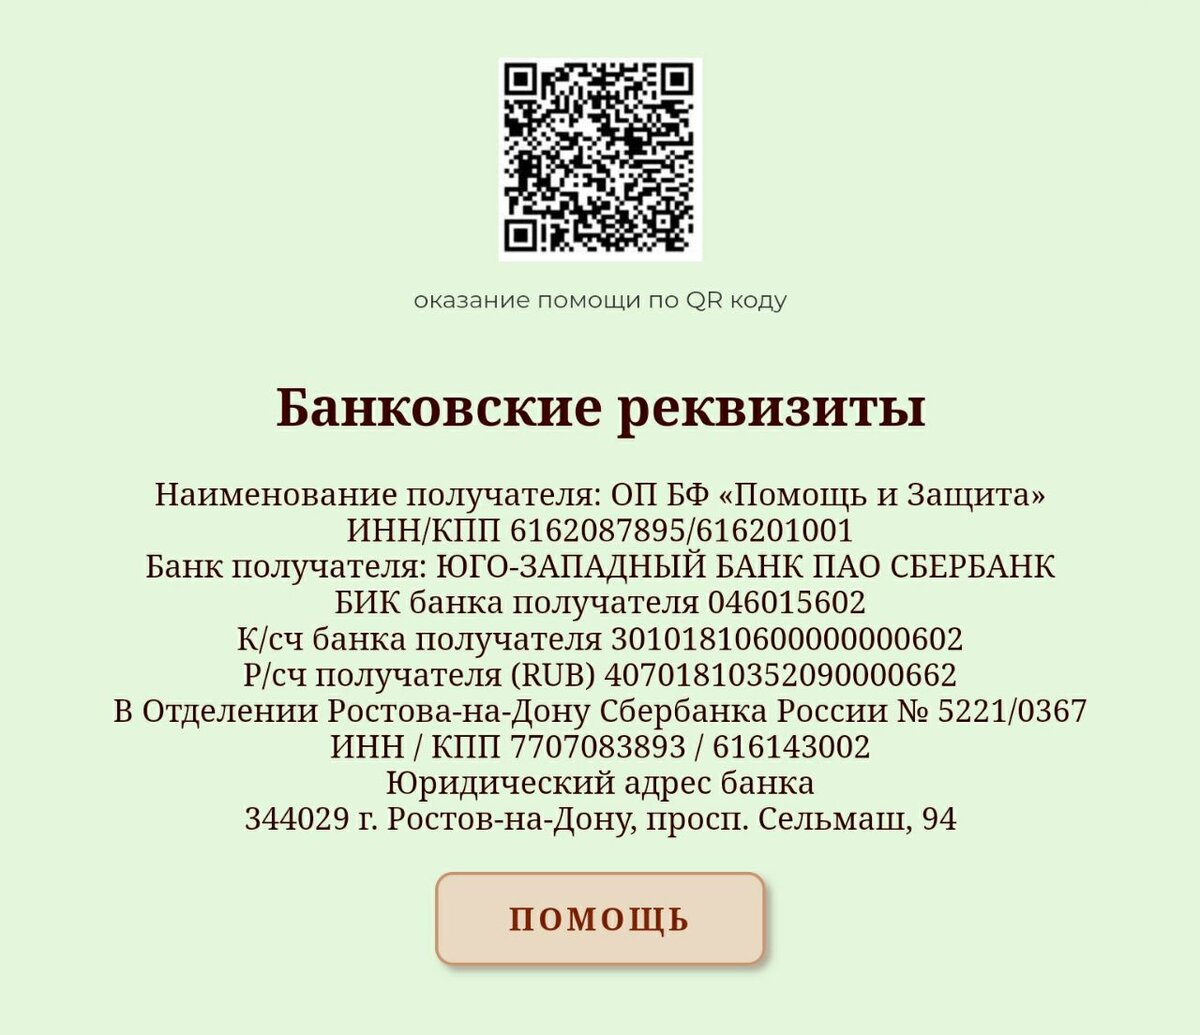 В качестве ИП могут быть зарегистрированы граждане РФ, а также постоянно или временно проживающие в РФ иностранные граждане и лица без гражданства.-2-2